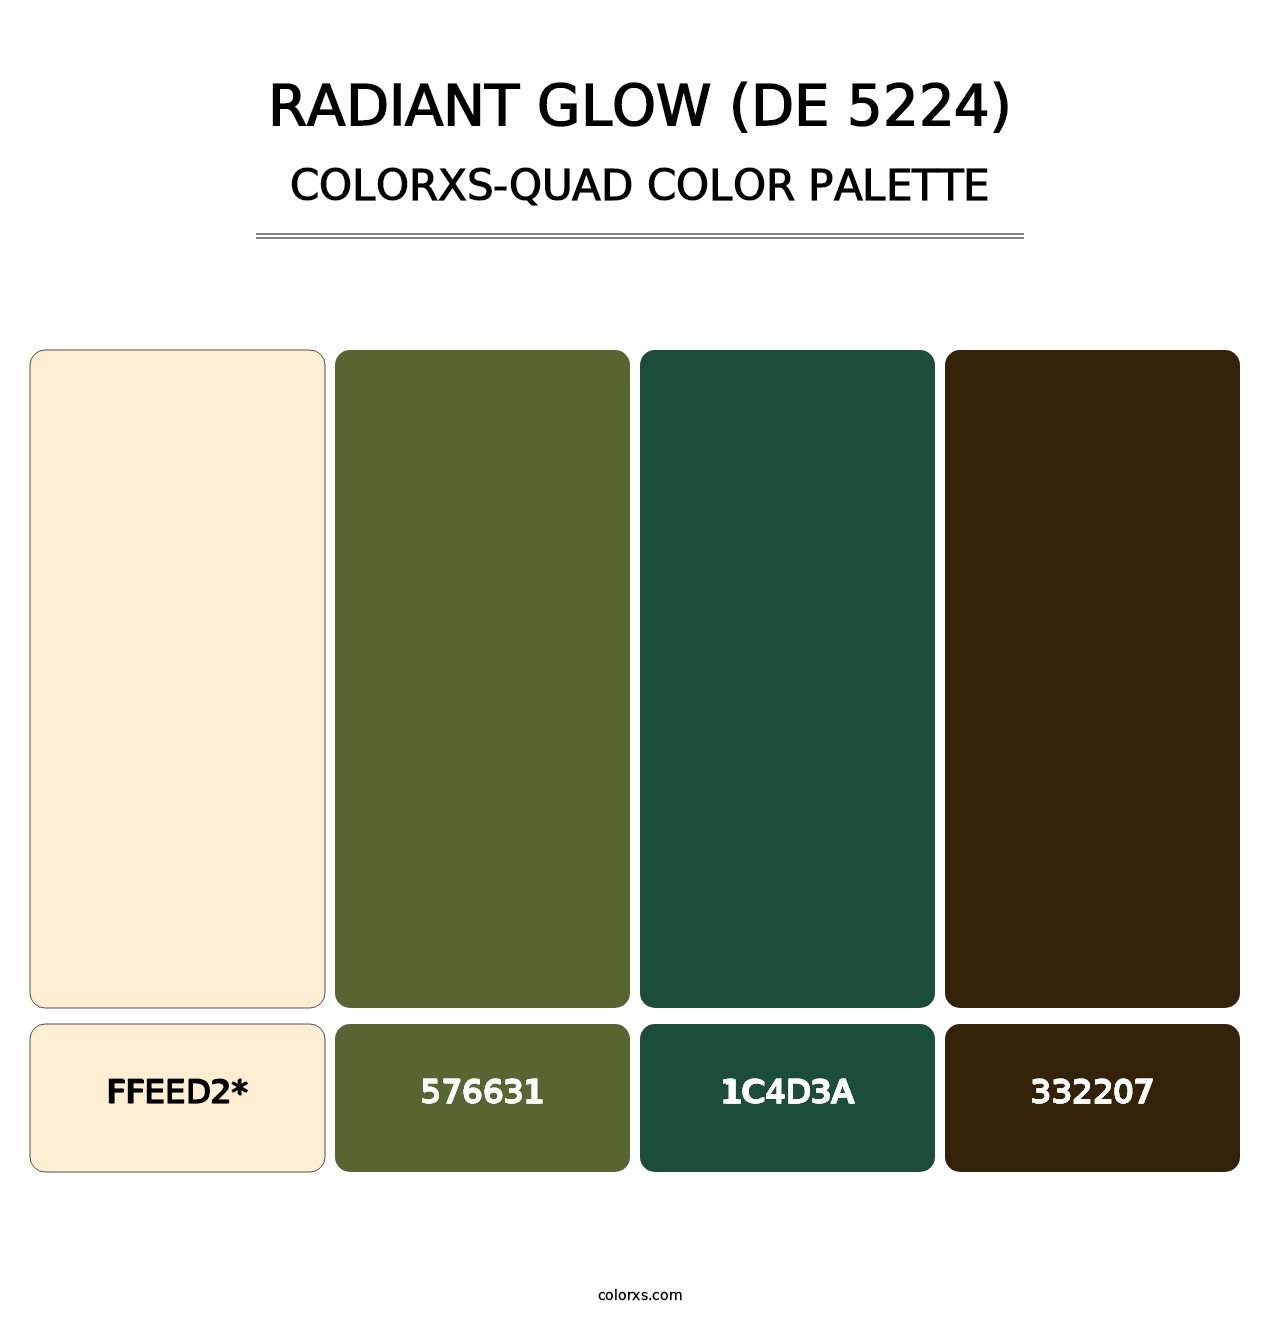 Radiant Glow (DE 5224) - Colorxs Quad Palette